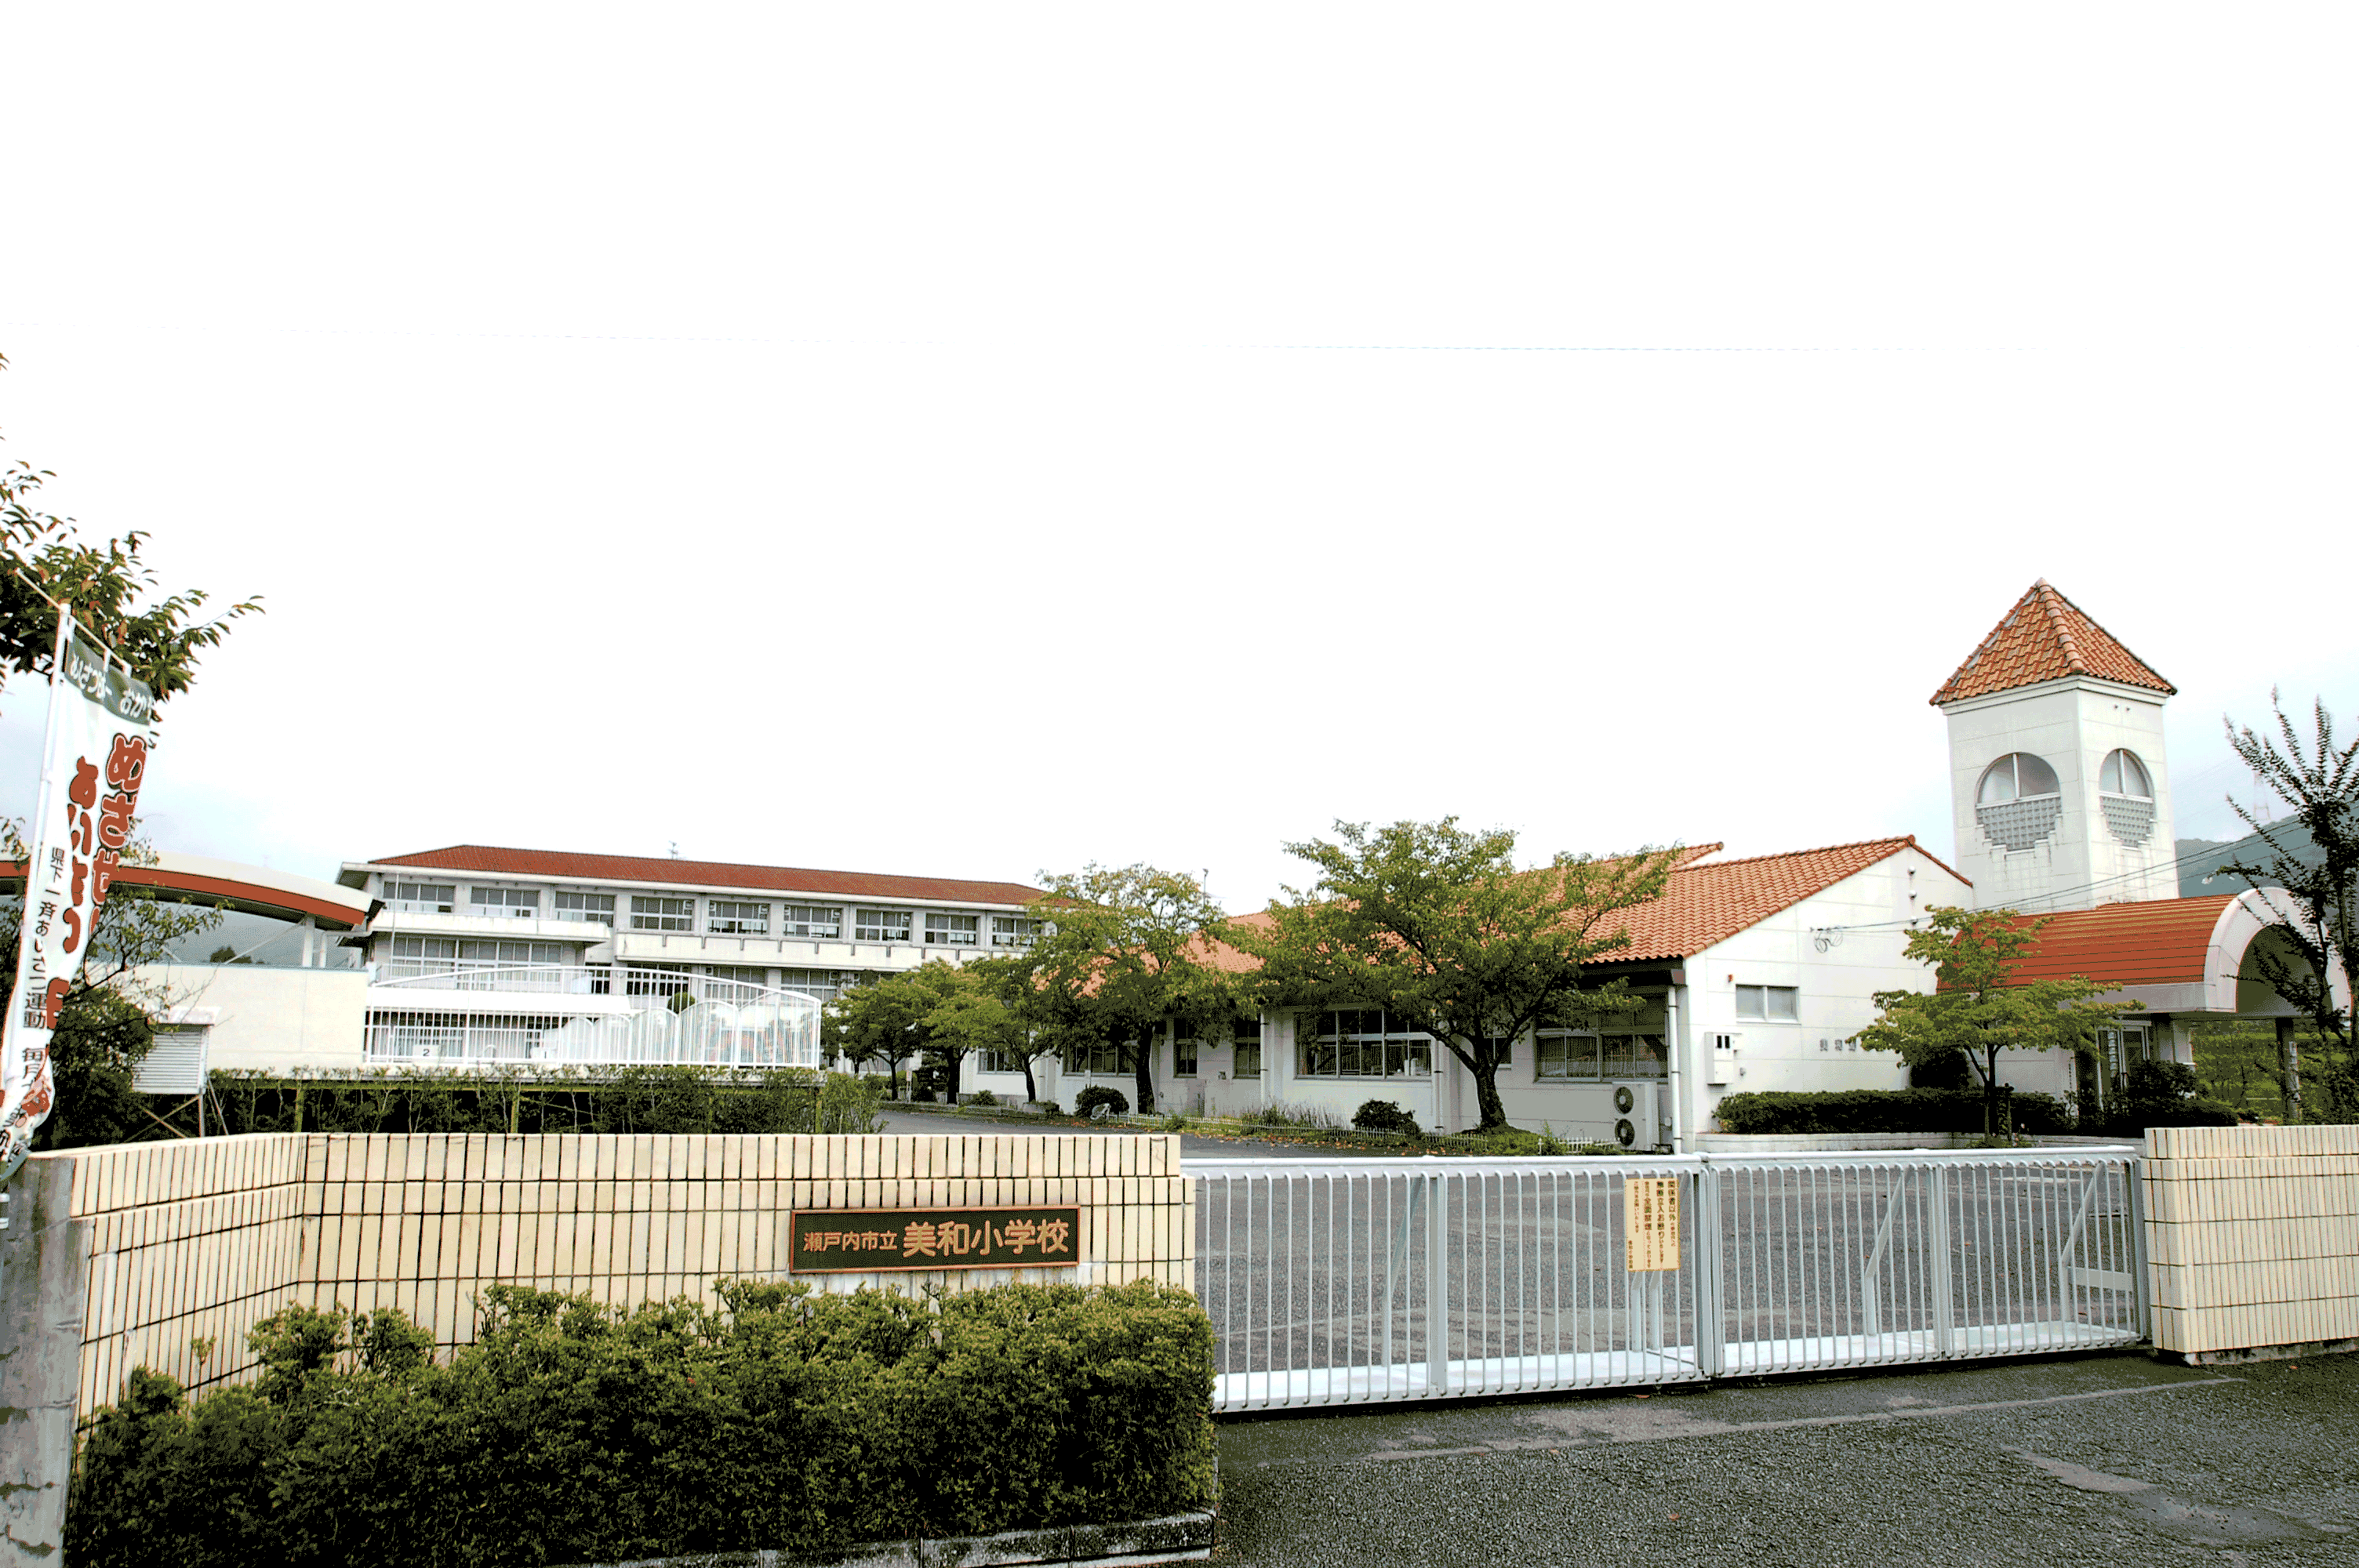 770m to Setouchi Municipal Miwa Elementary School (elementary school)